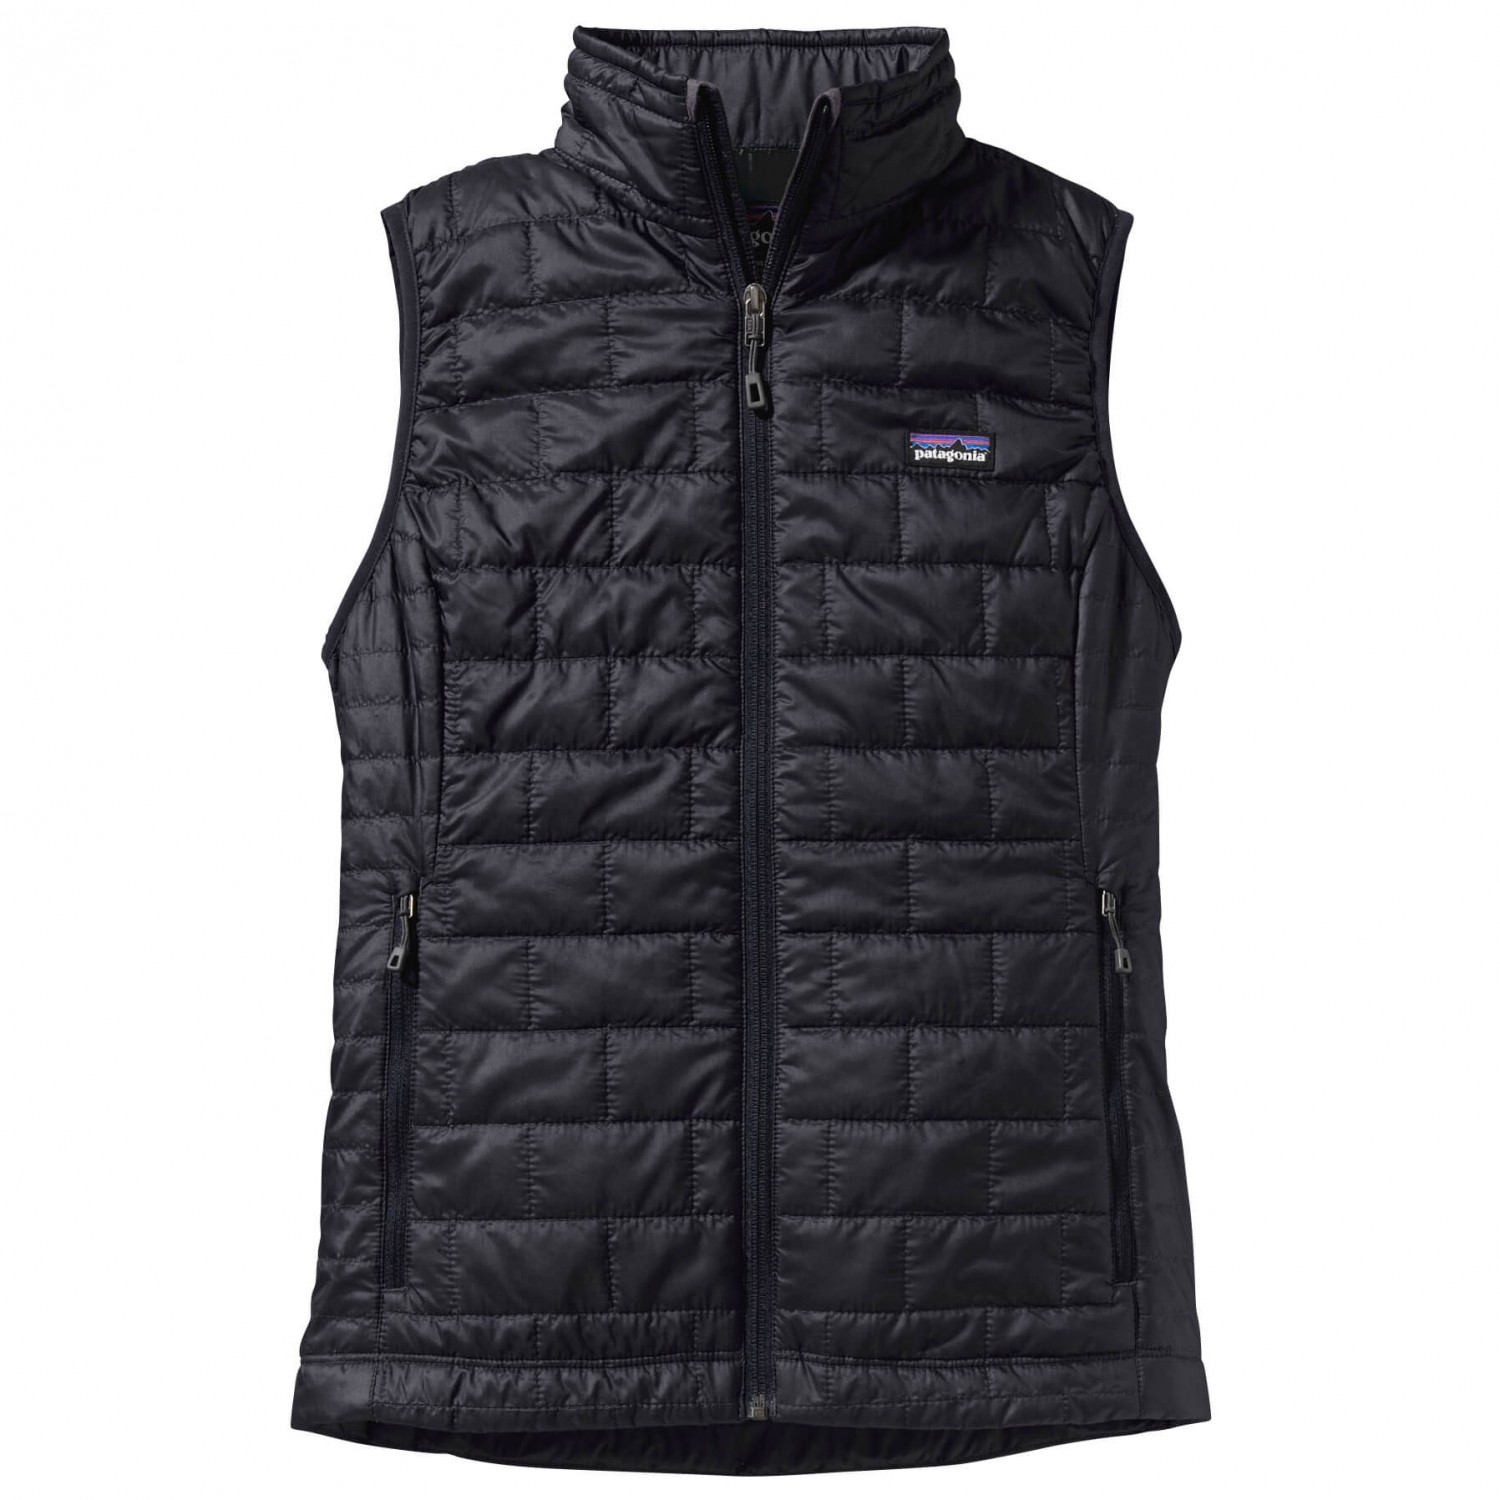 Жилет из синтетического волокна Patagonia Women's Nano Puff Vest, черный жилет из синтетического волокна tentree puffer vest цвет meteorite black